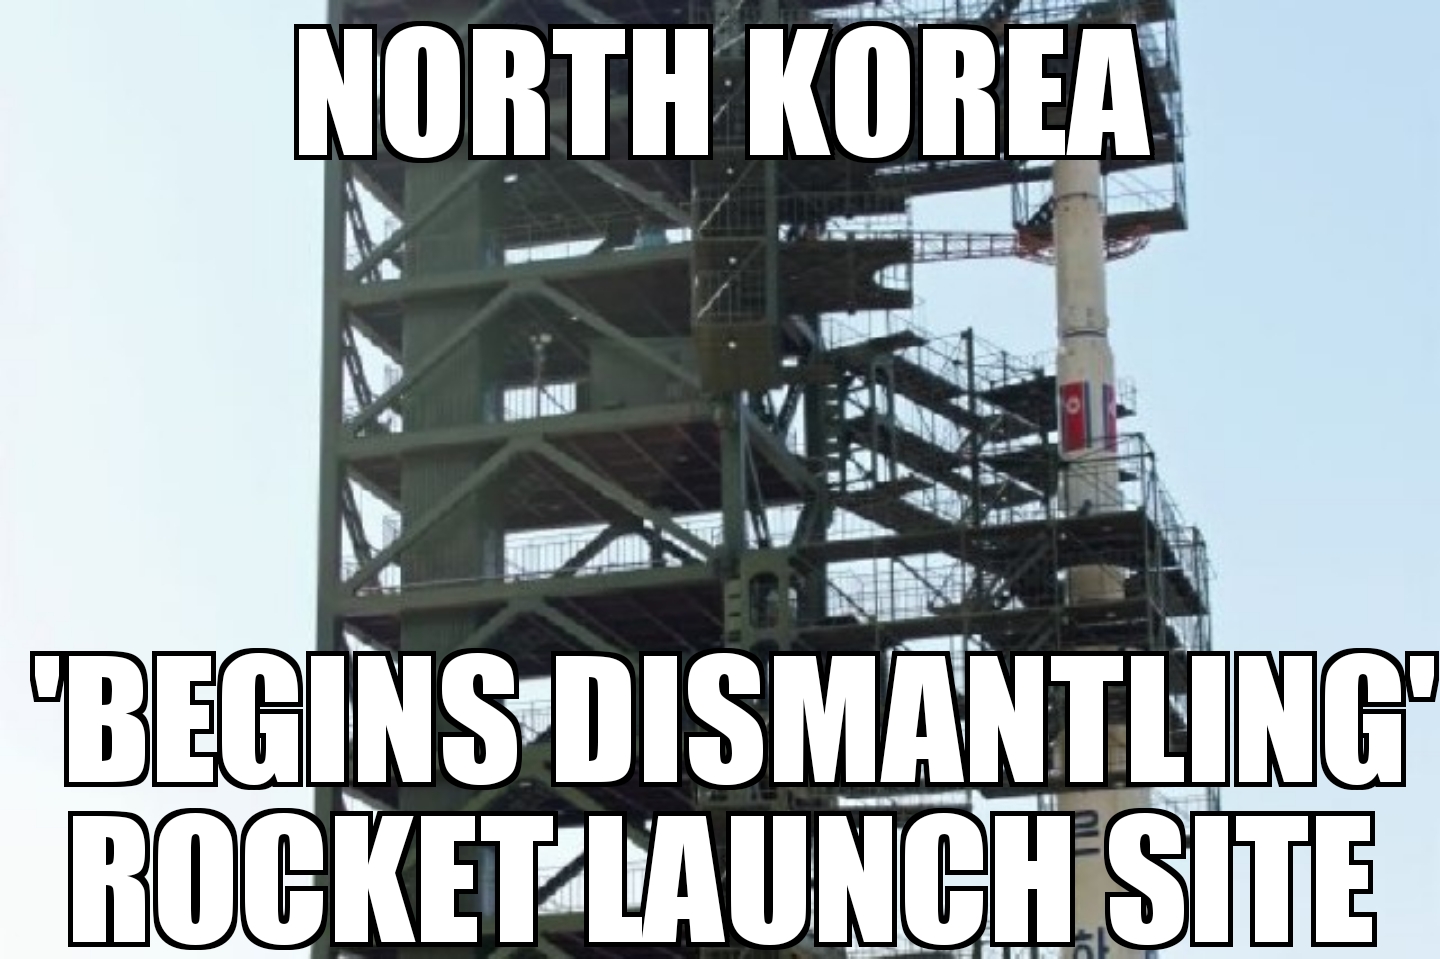 North Korea ‘dismantling’ rocket site